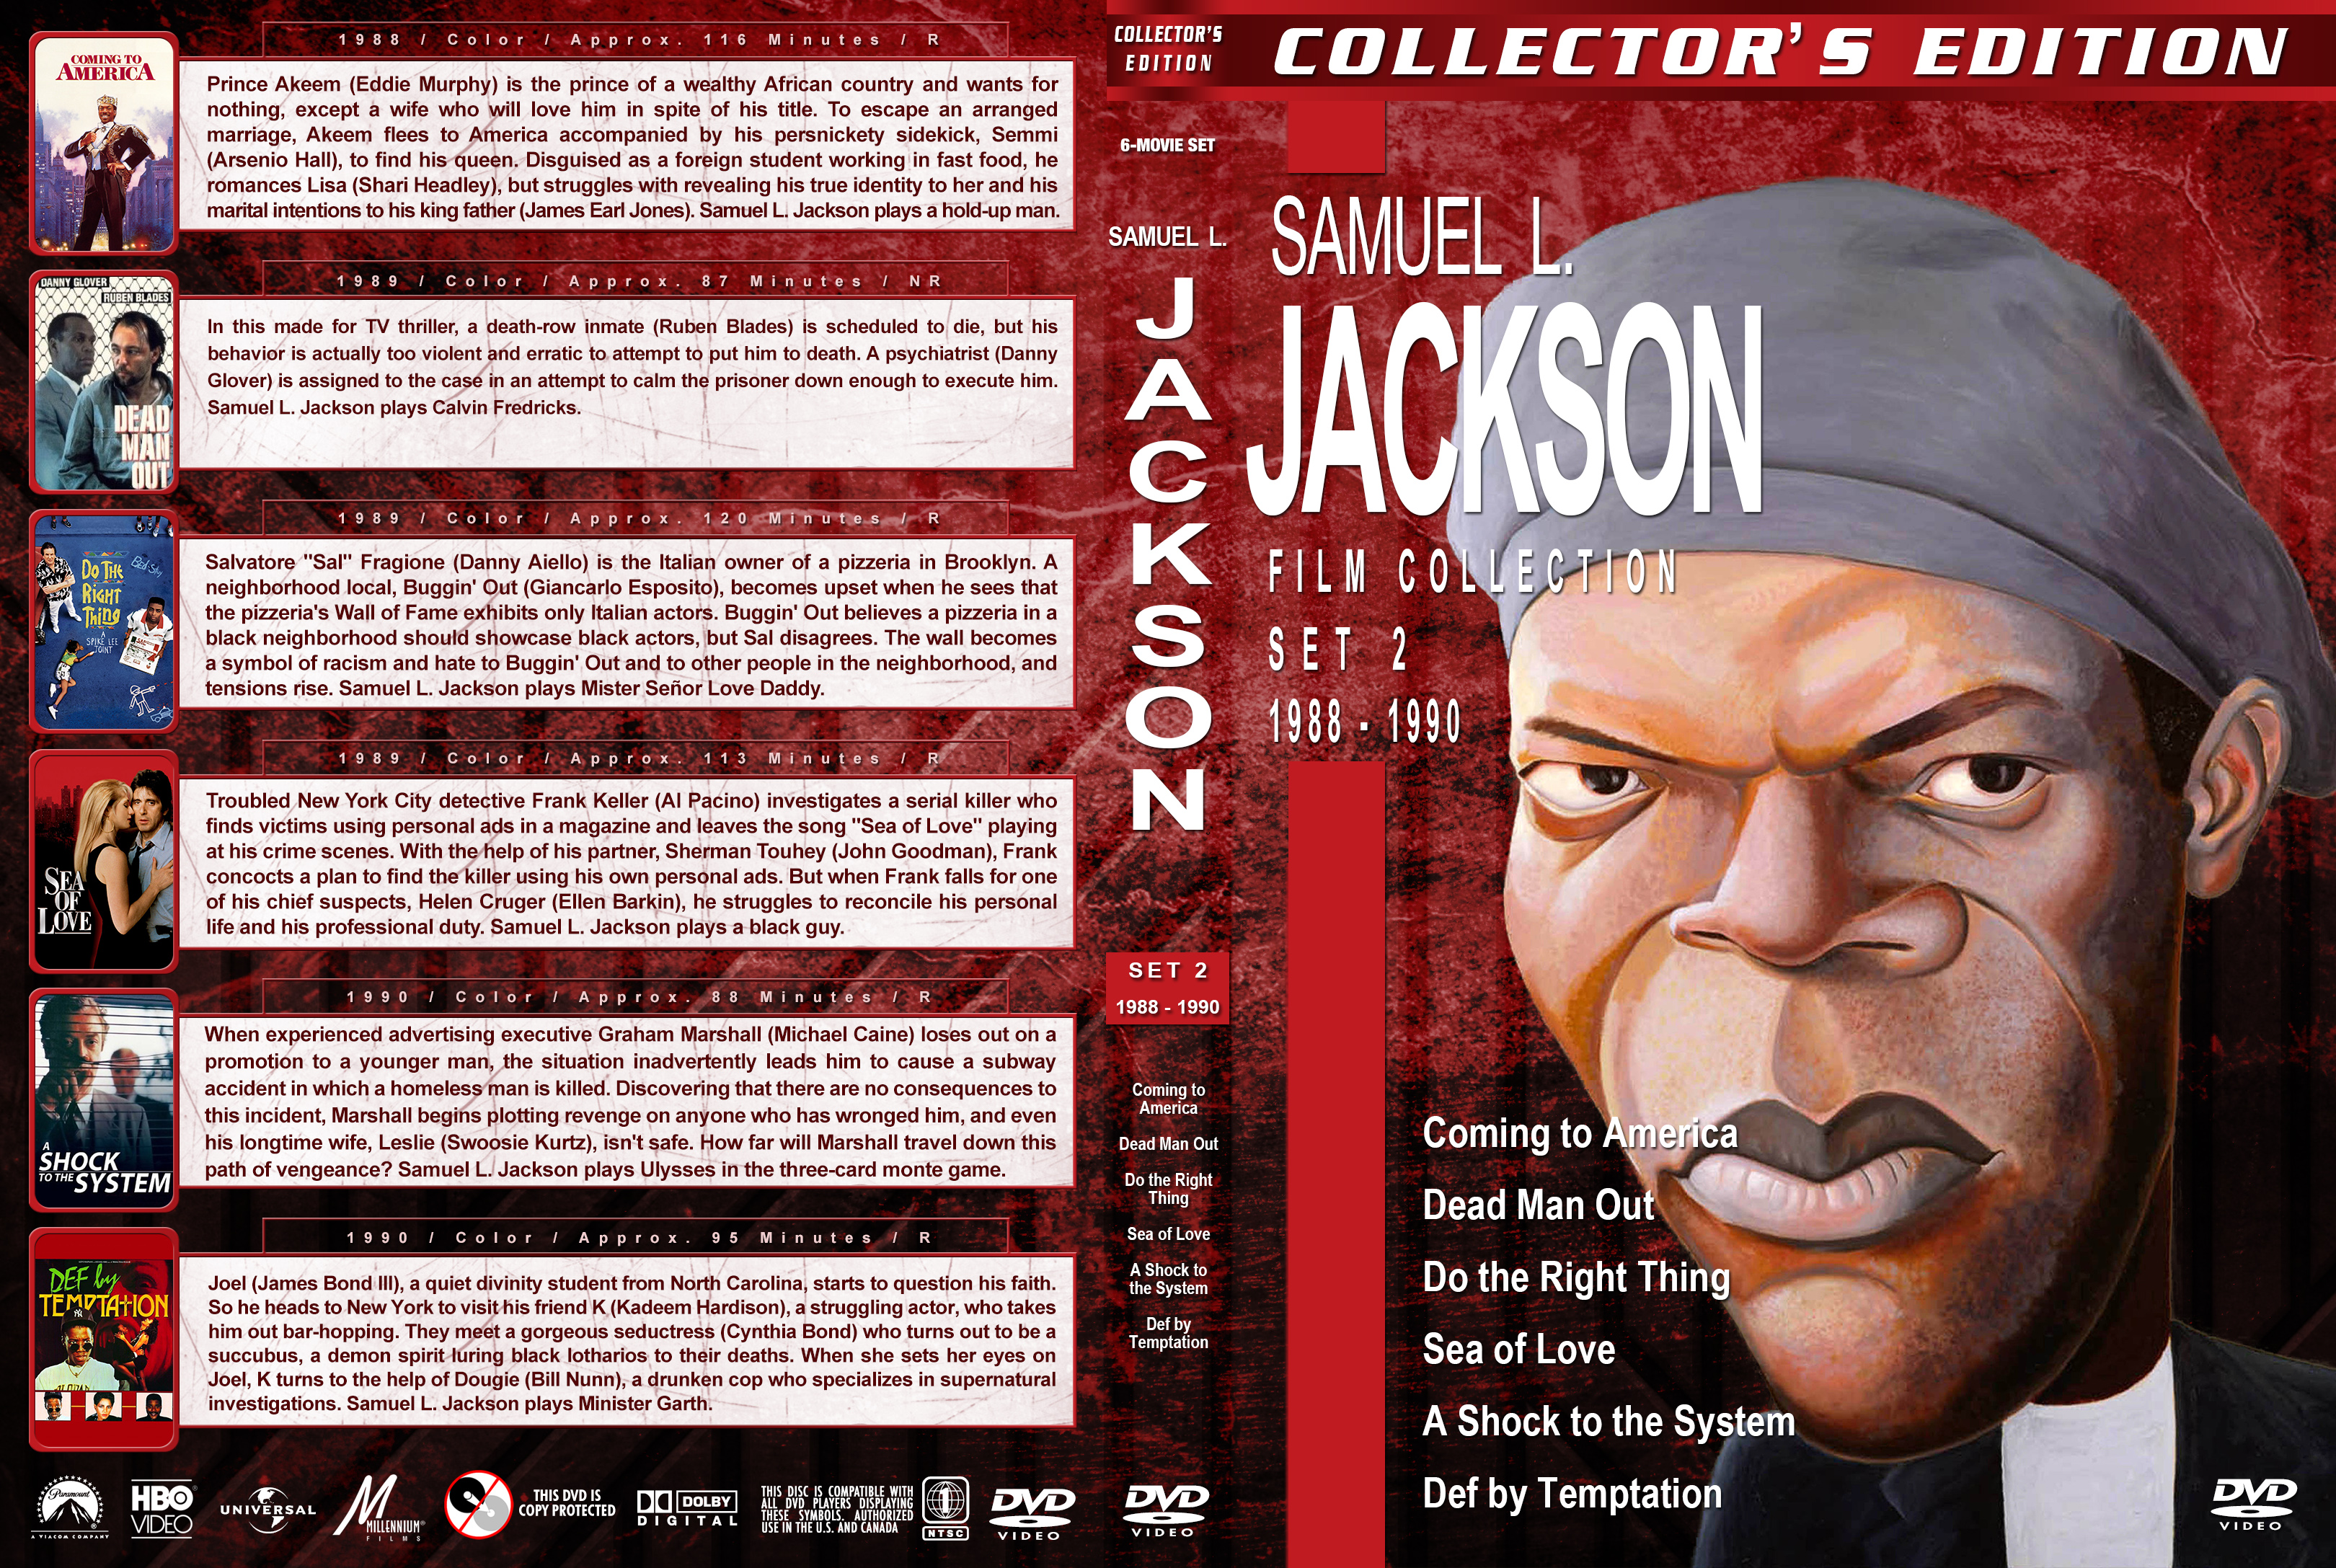 Samuel L Jackson Film Collection Set 2 1988 1990 Cover